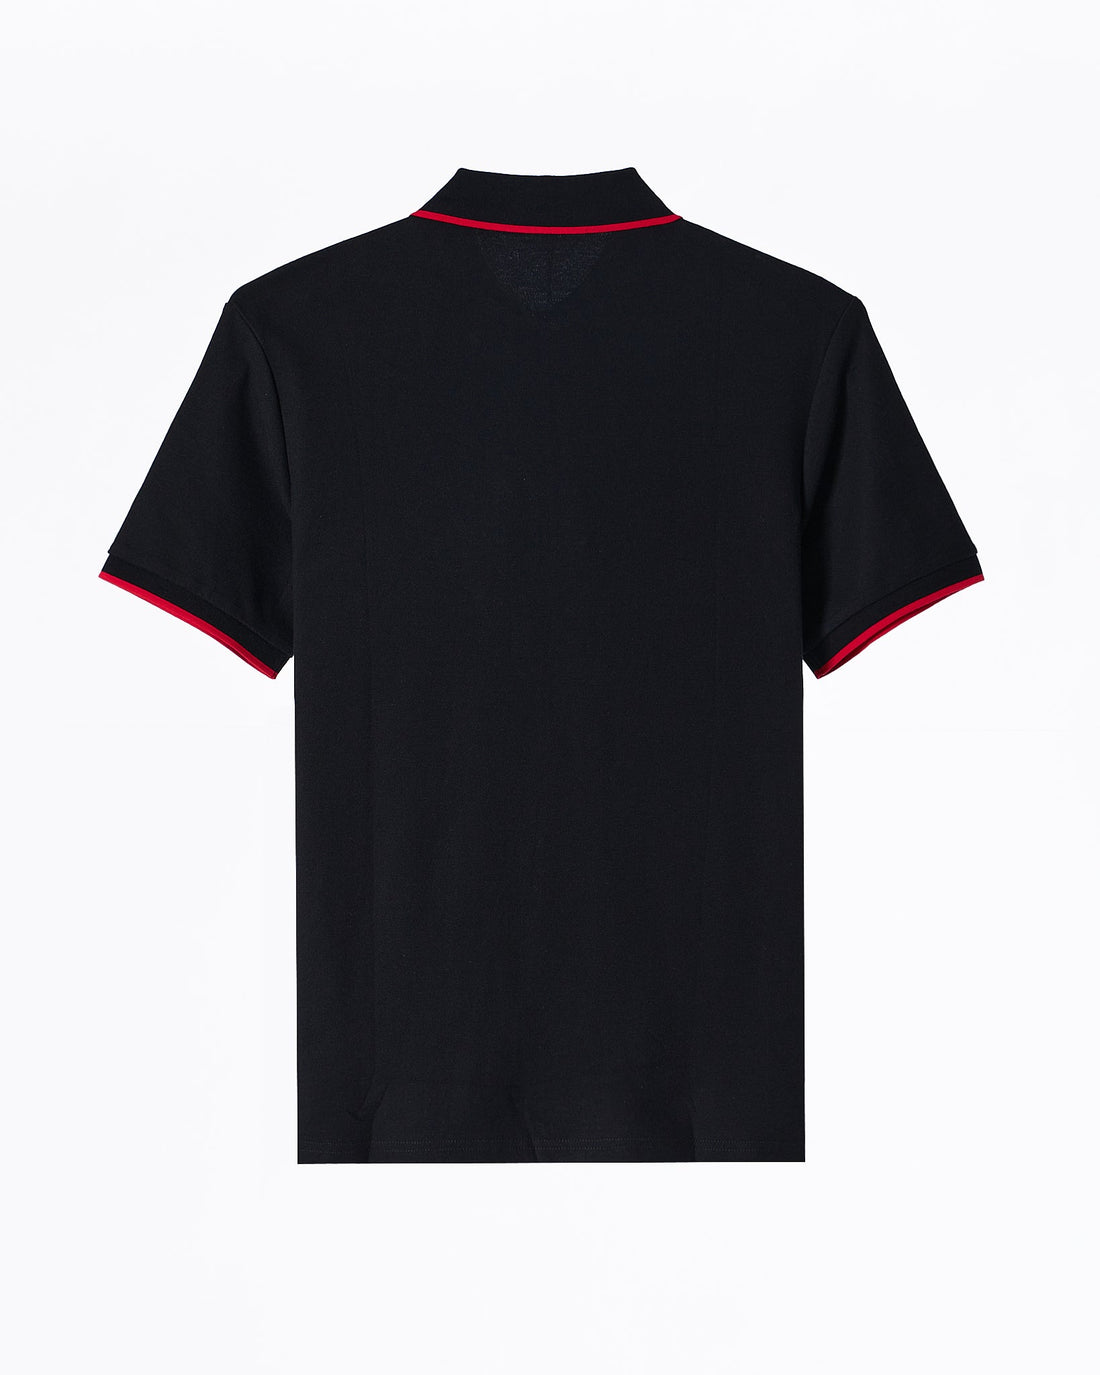 MOI OUTFIT-PRA Zip Collar Men Black Polo Shirt 62.90